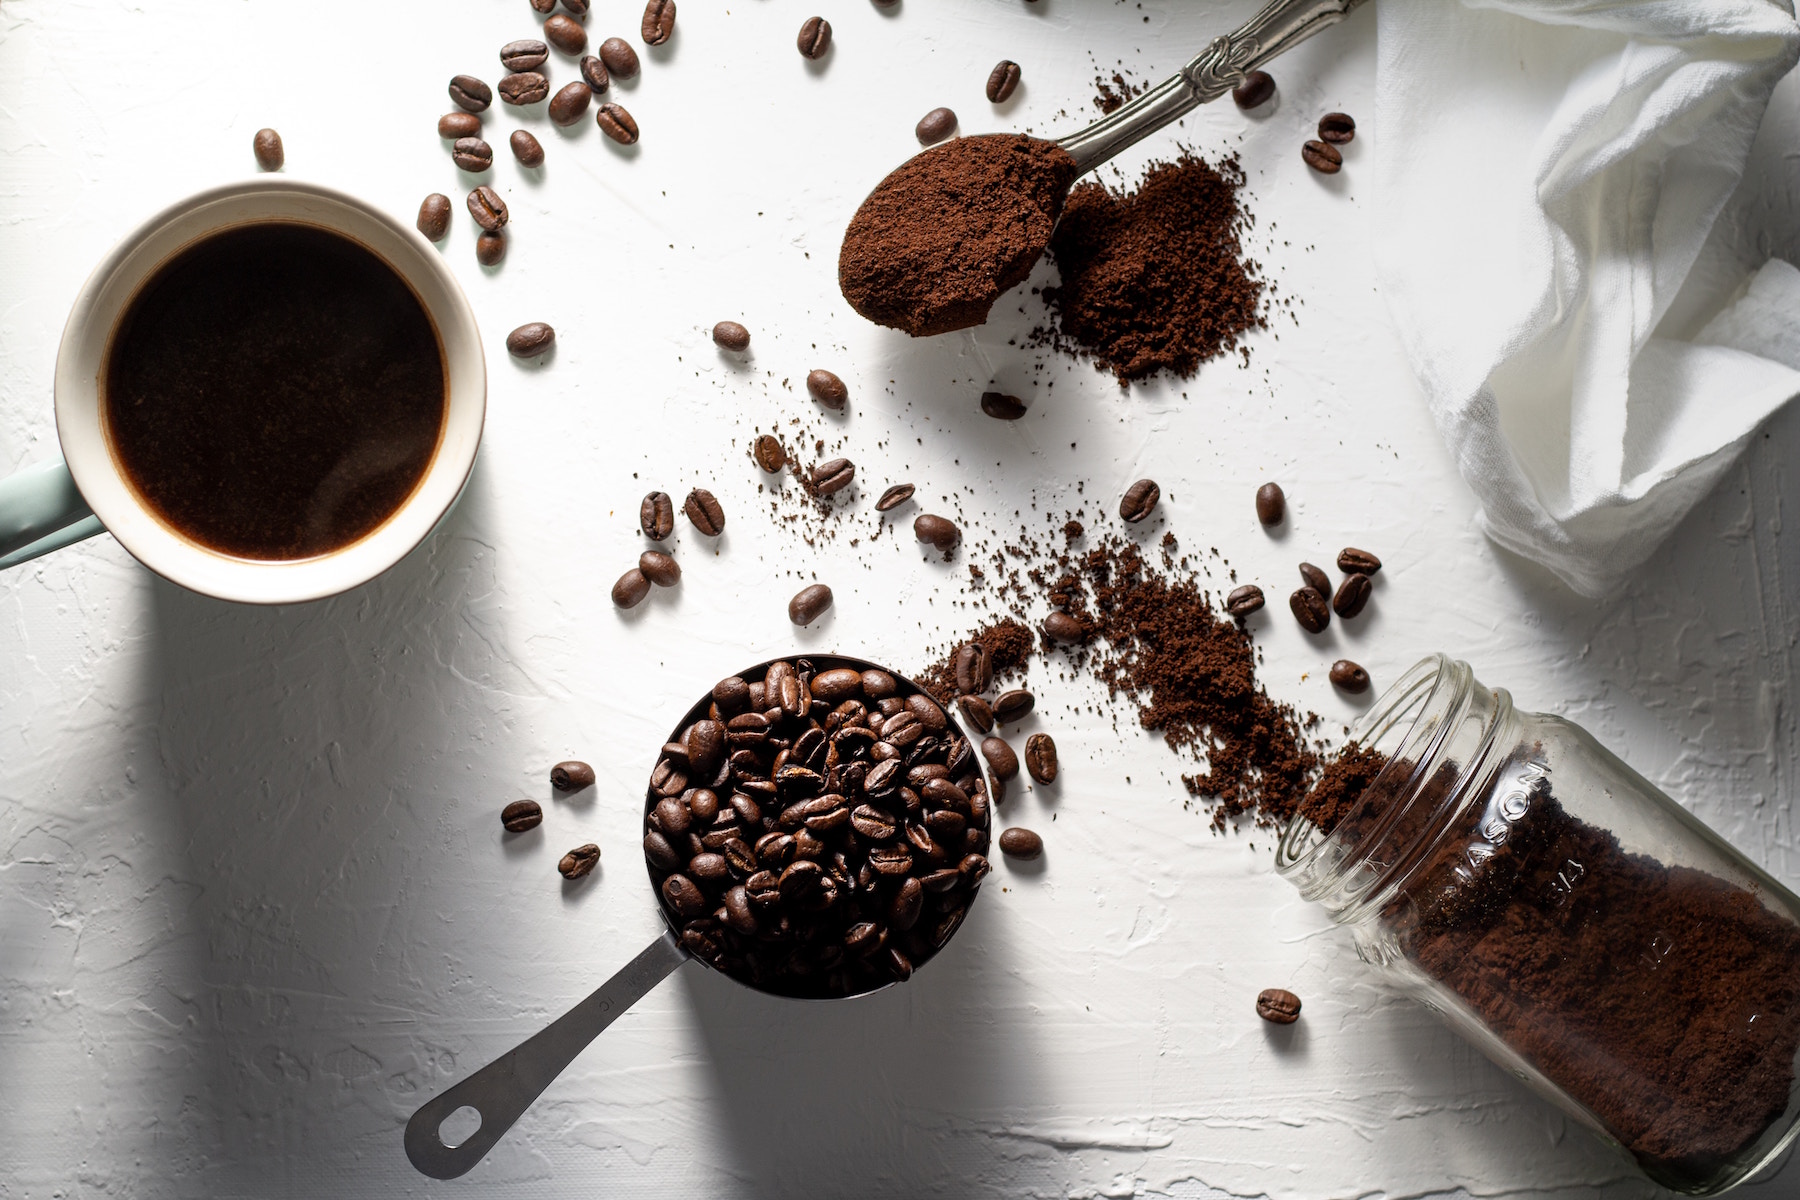 Qué impacto tiene la taza en nuestro café?